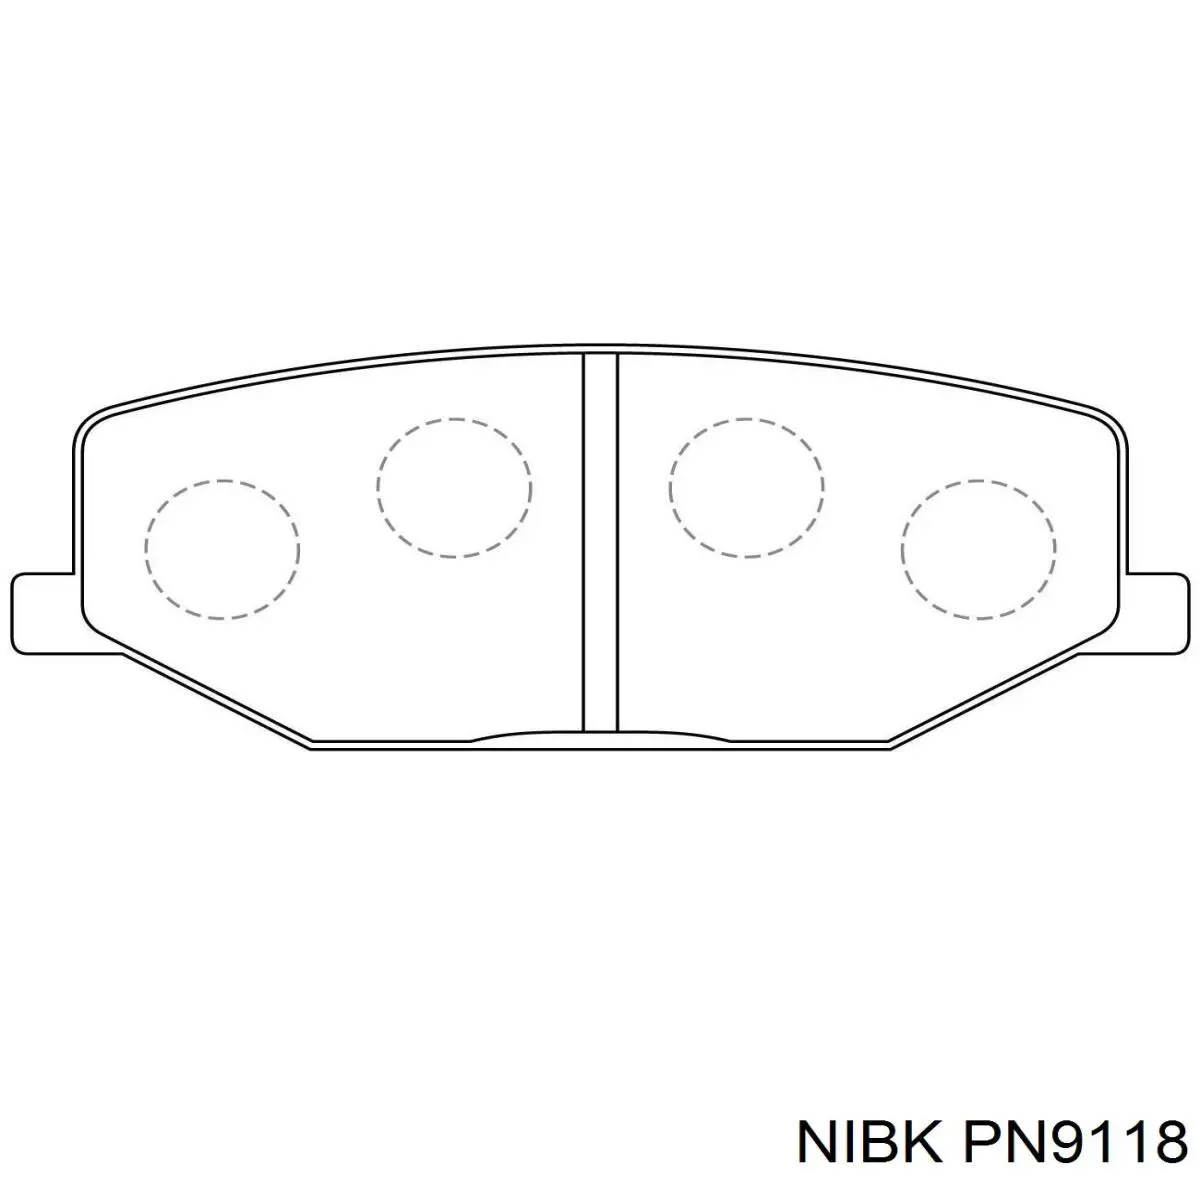 PN9118 Nibk pastillas de freno delanteras